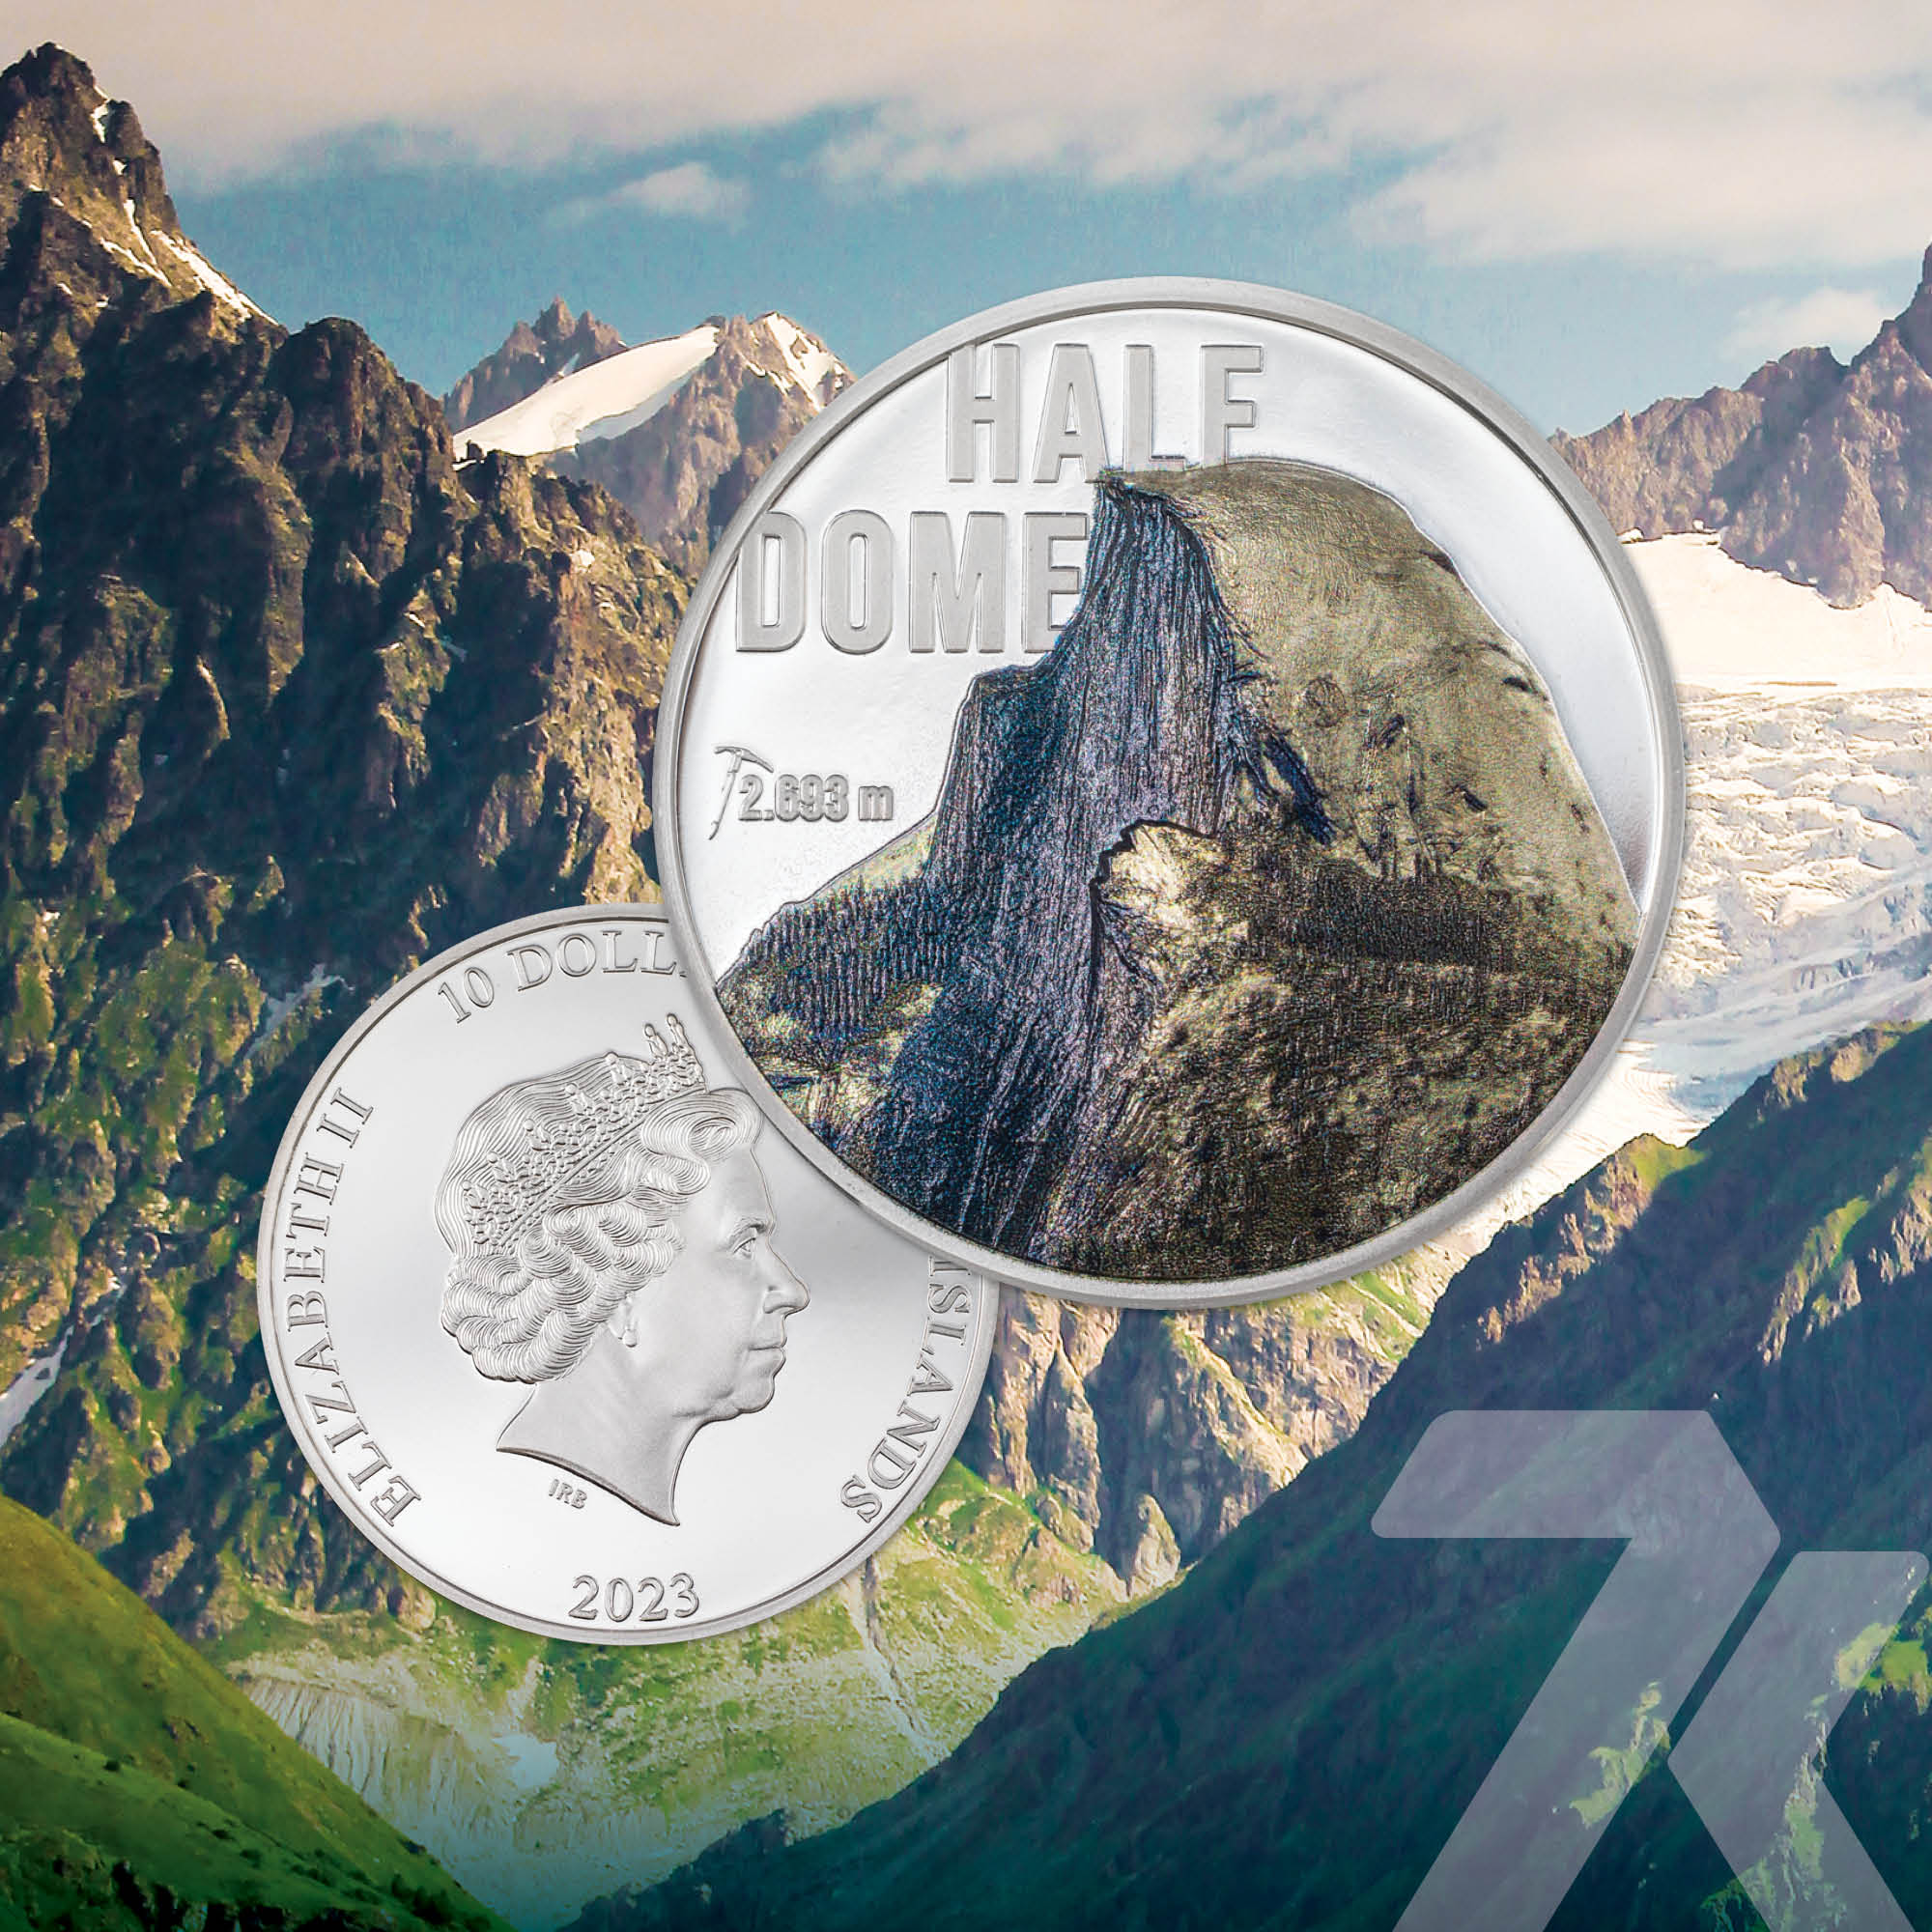 2023 Mountains Half Dome 2 oz Silver Coin